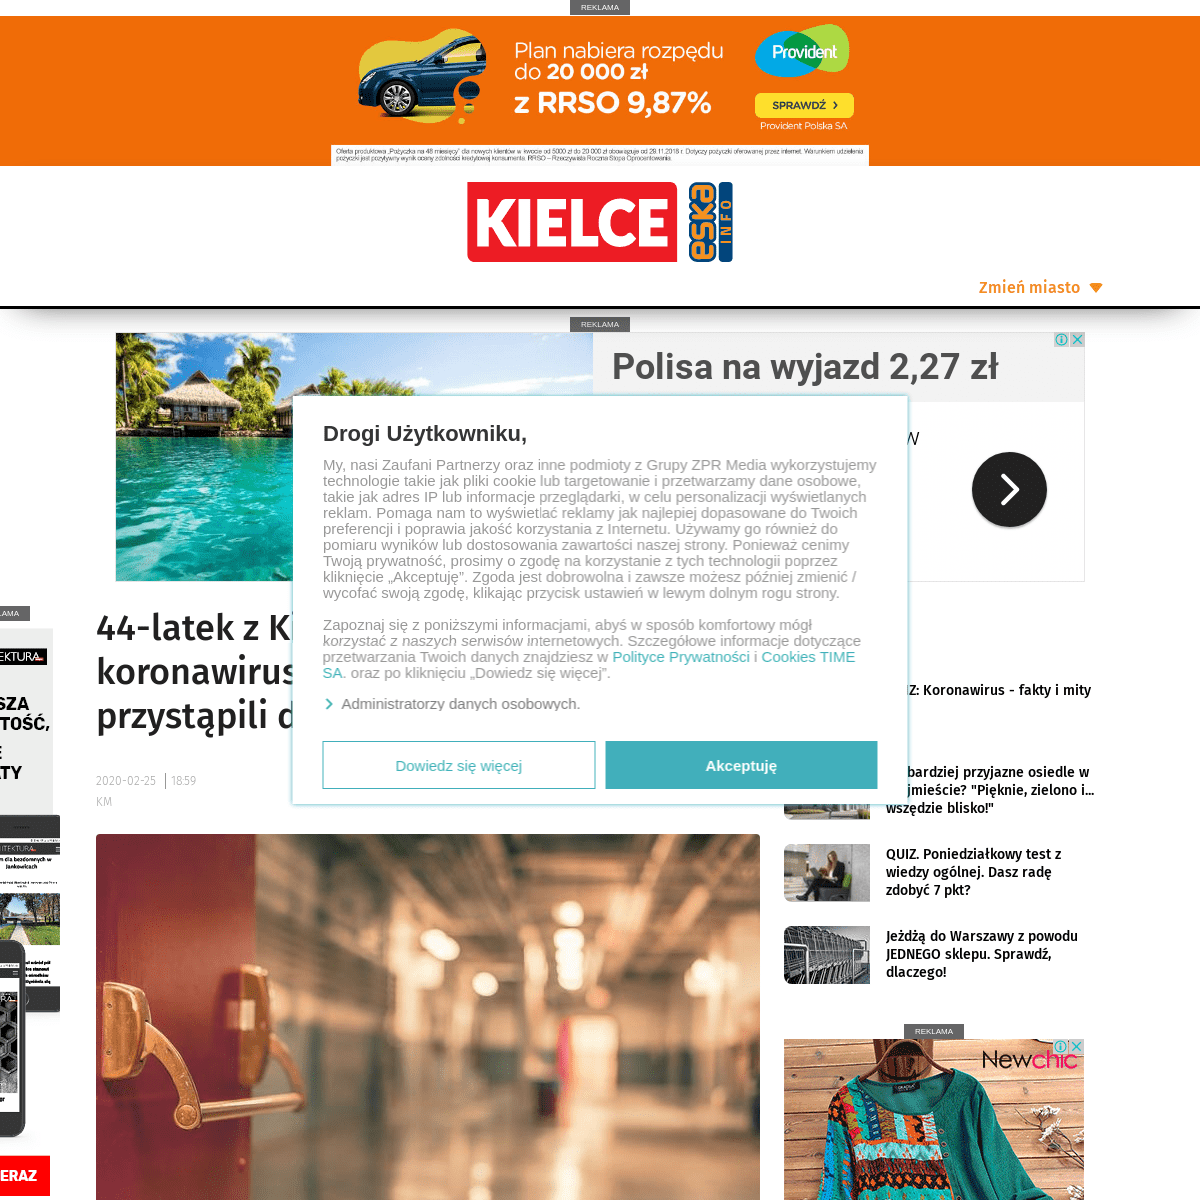 A complete backup of www.se.pl/kielce/koronawirus-w-kielcach-mezczyzna-wrocil-do-wloch-z-wysoka-goraczka-aa-HgeS-eZEv-DXdc.html